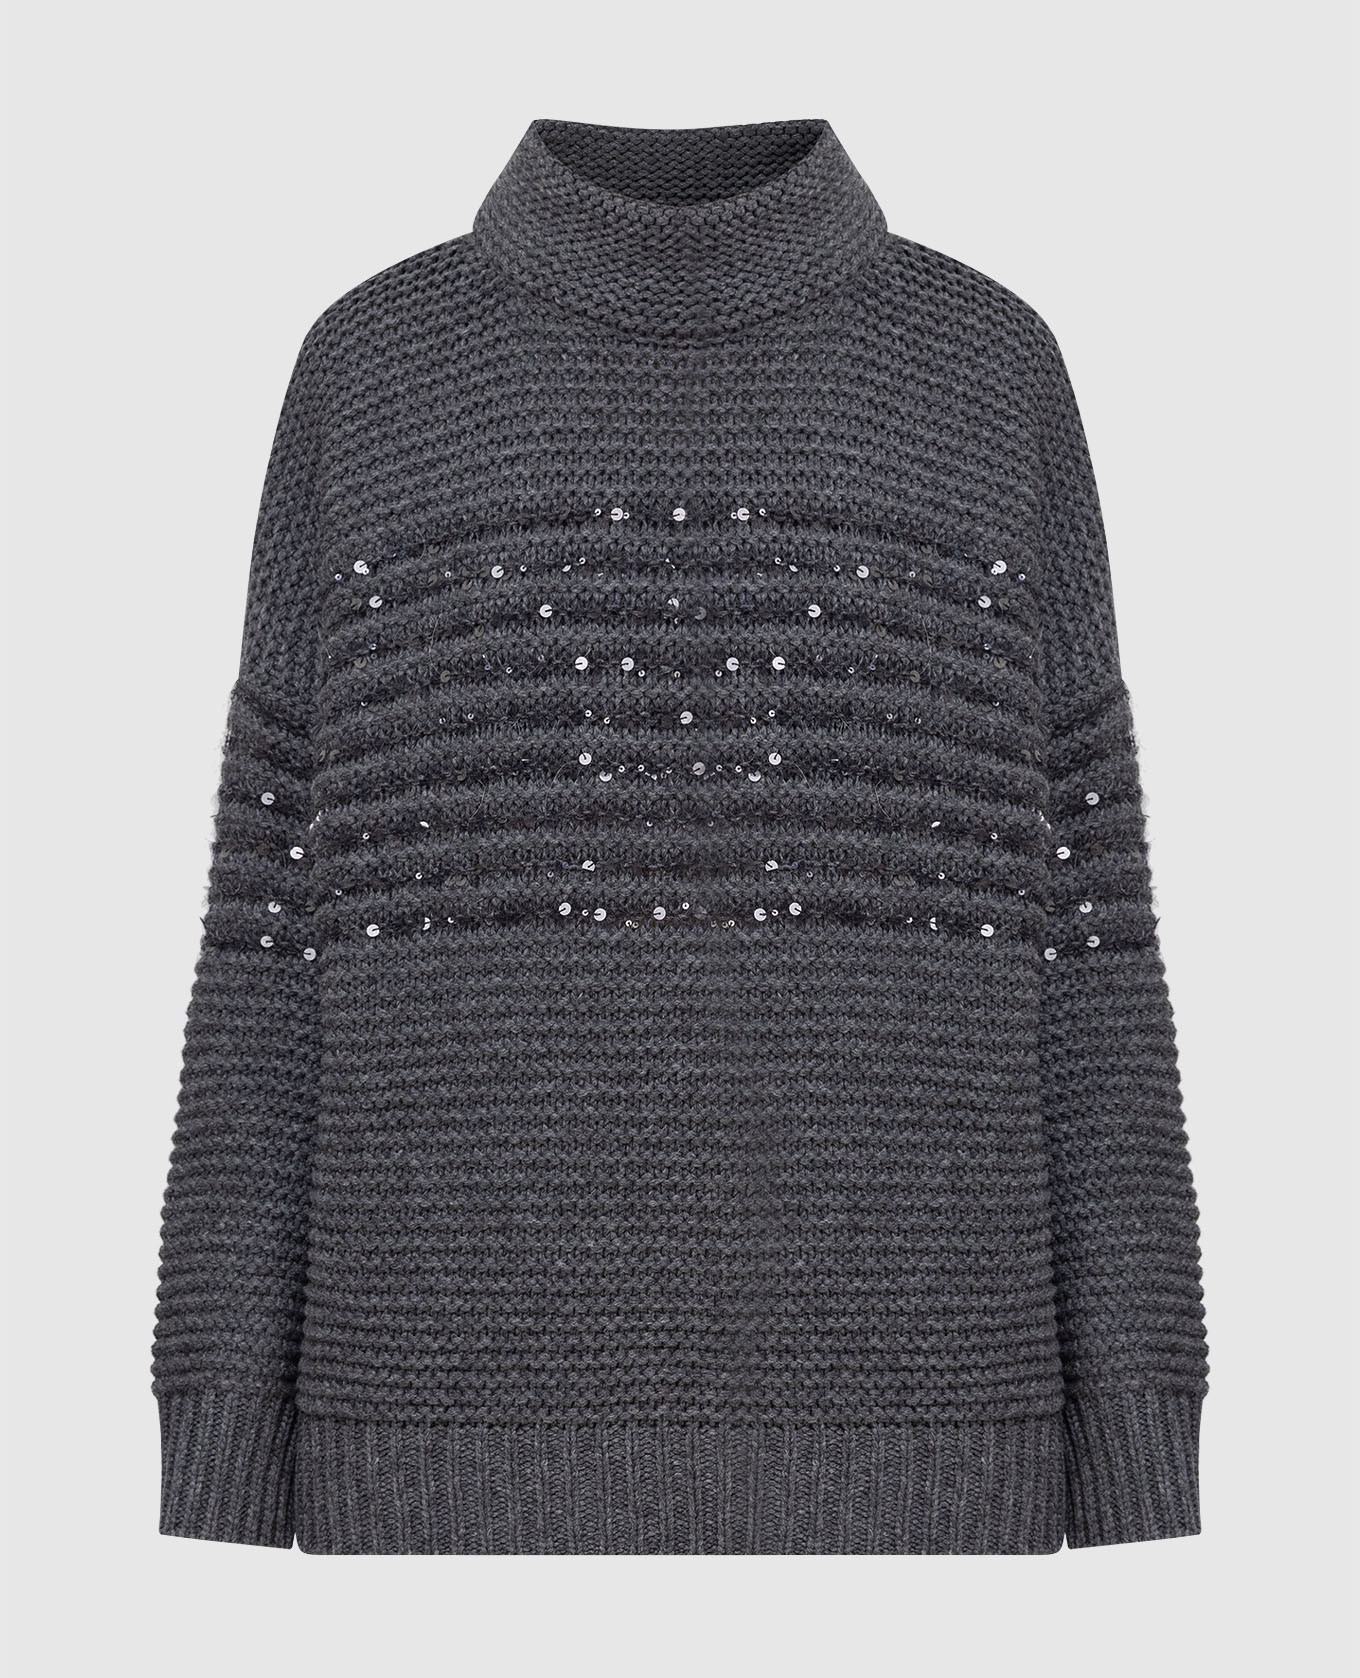 Темно-серый свитер из  шерсти, кашемира и шелка в пайетках